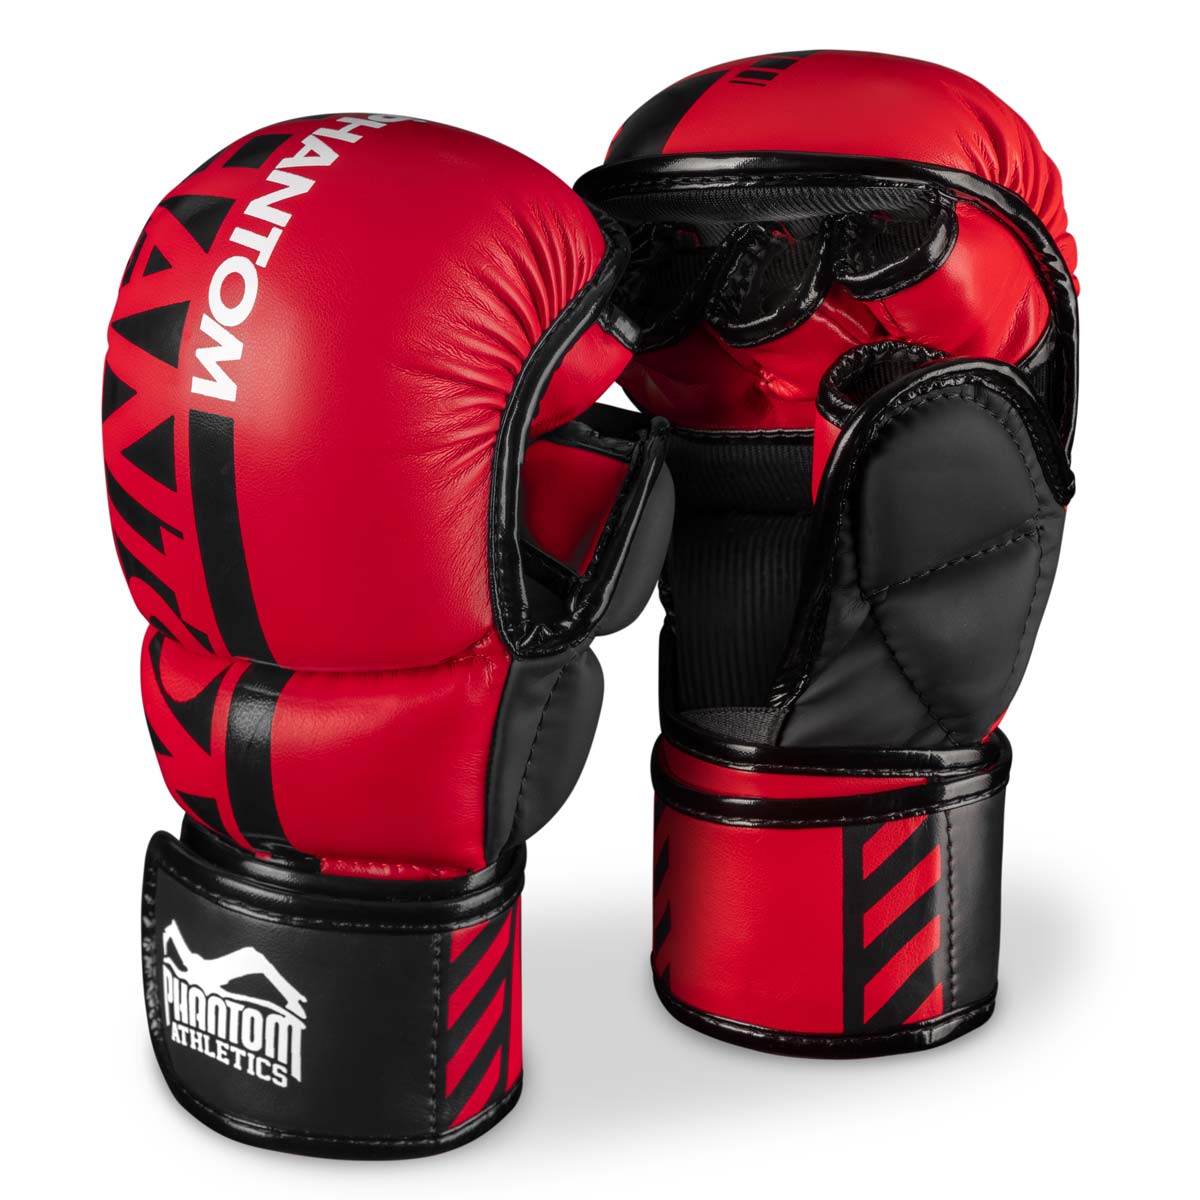 Phantom MMA sparringshandskar. Den säkraste handsken för din kampsportsträning. Nu i den begränsade röda färgen.